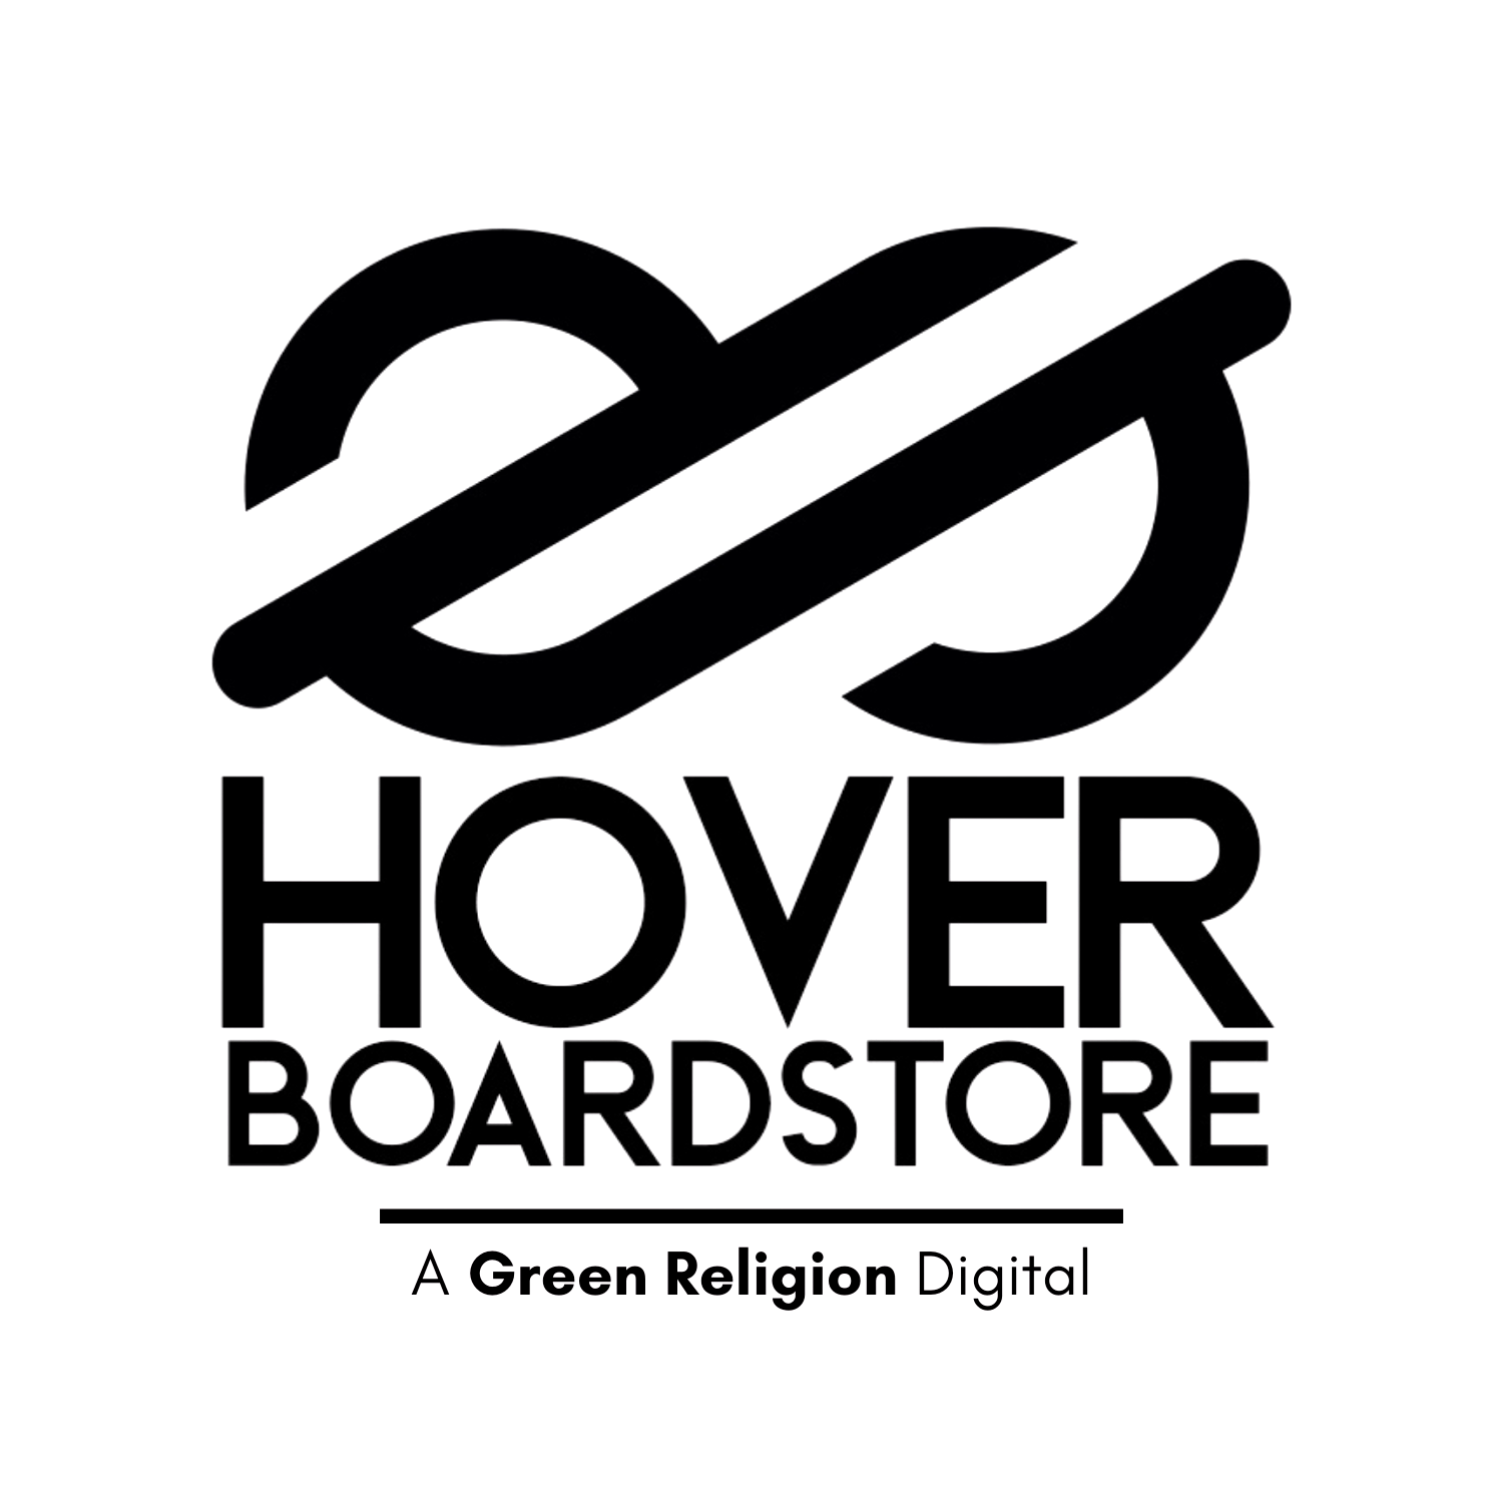 Hover Board Store